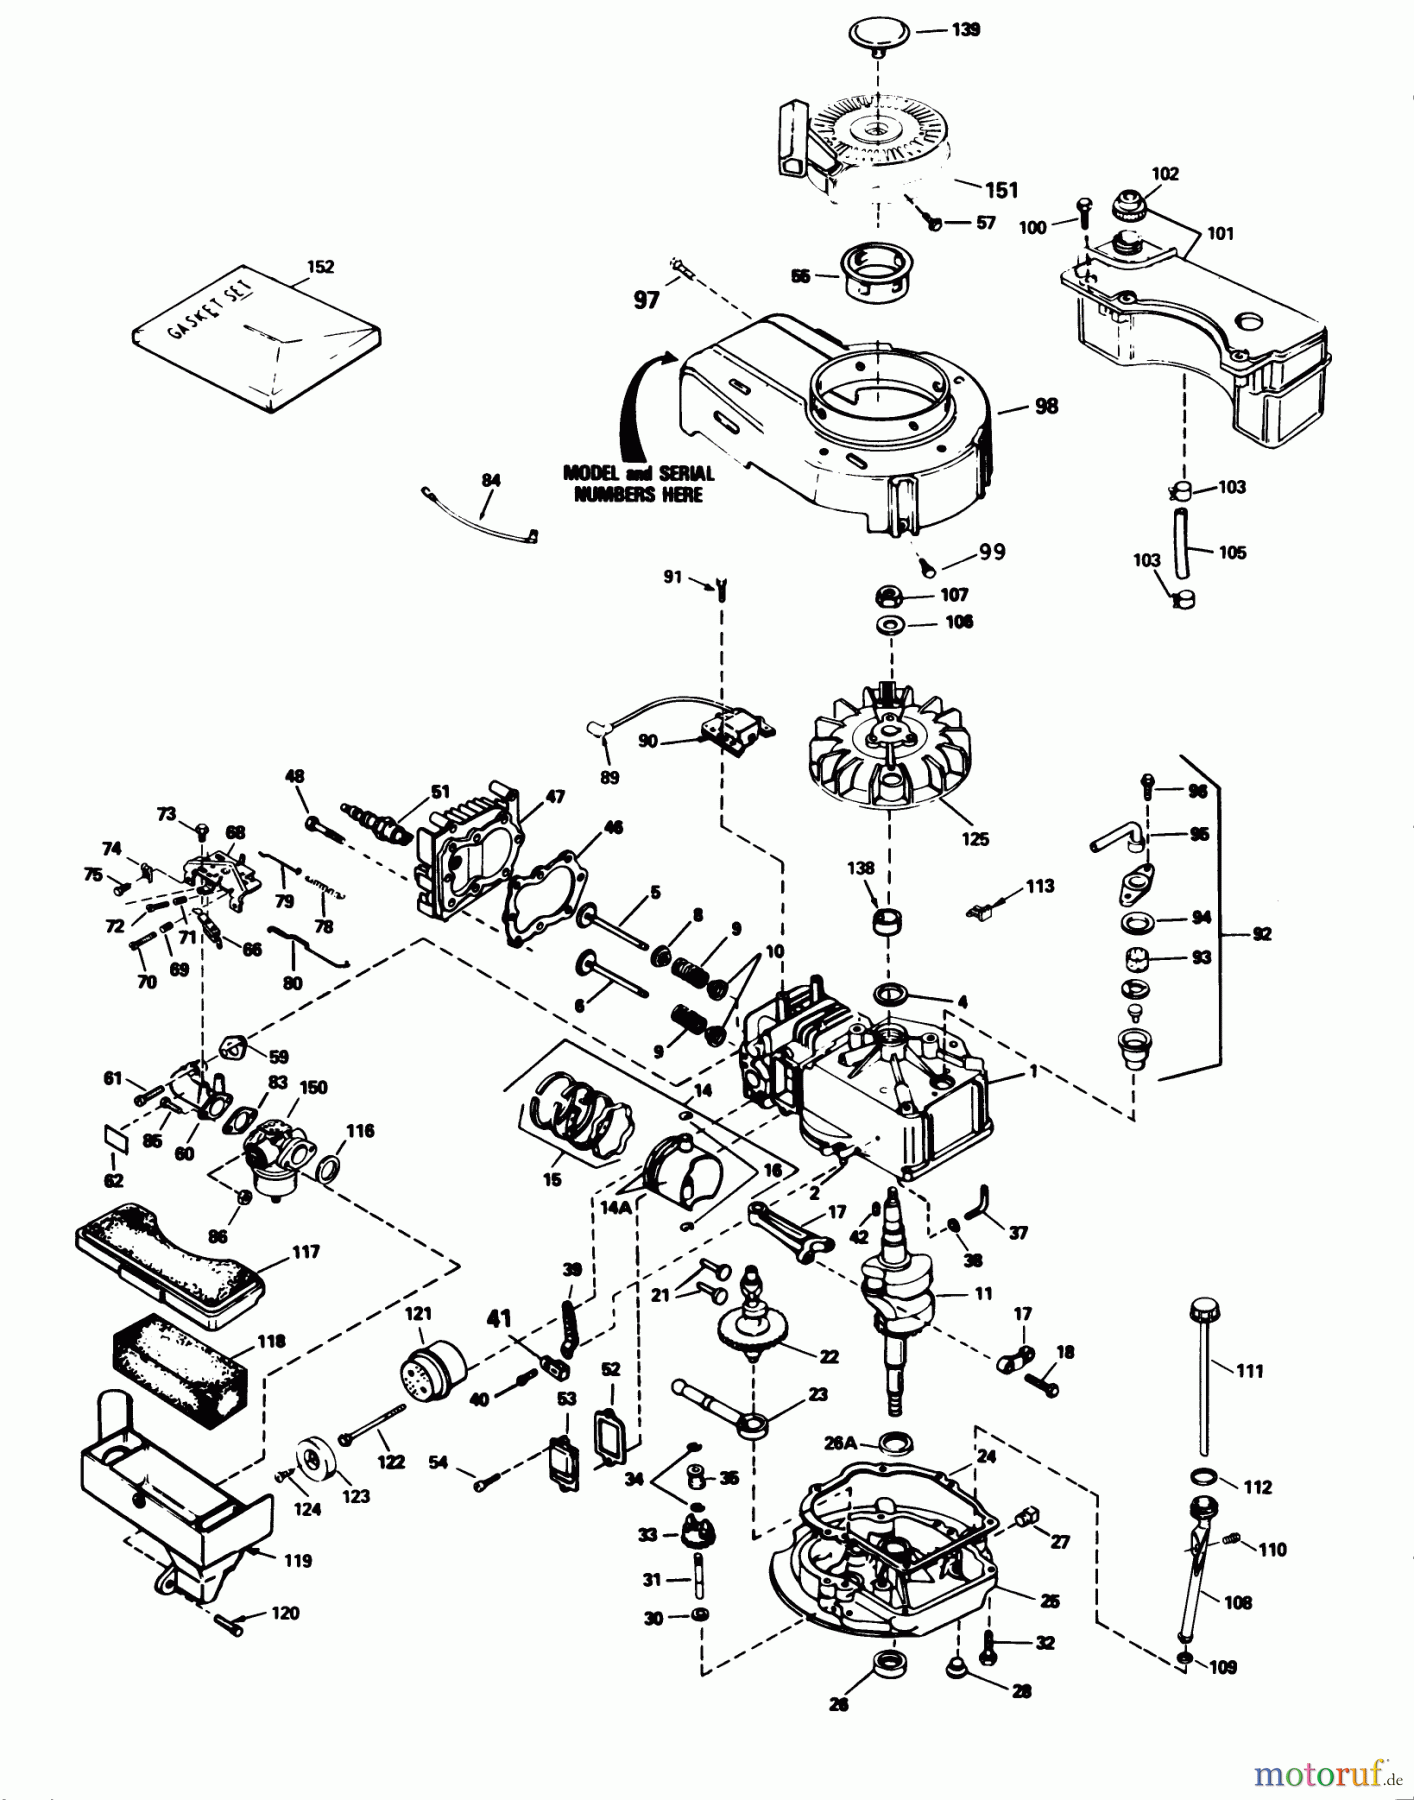  Toro Neu Mowers, Walk-Behind Seite 1 20695 - Toro Lawnmower, 1988 (8000001-8999999) ENGINE TECUMSEH MODEL NO. TVS100-44013B